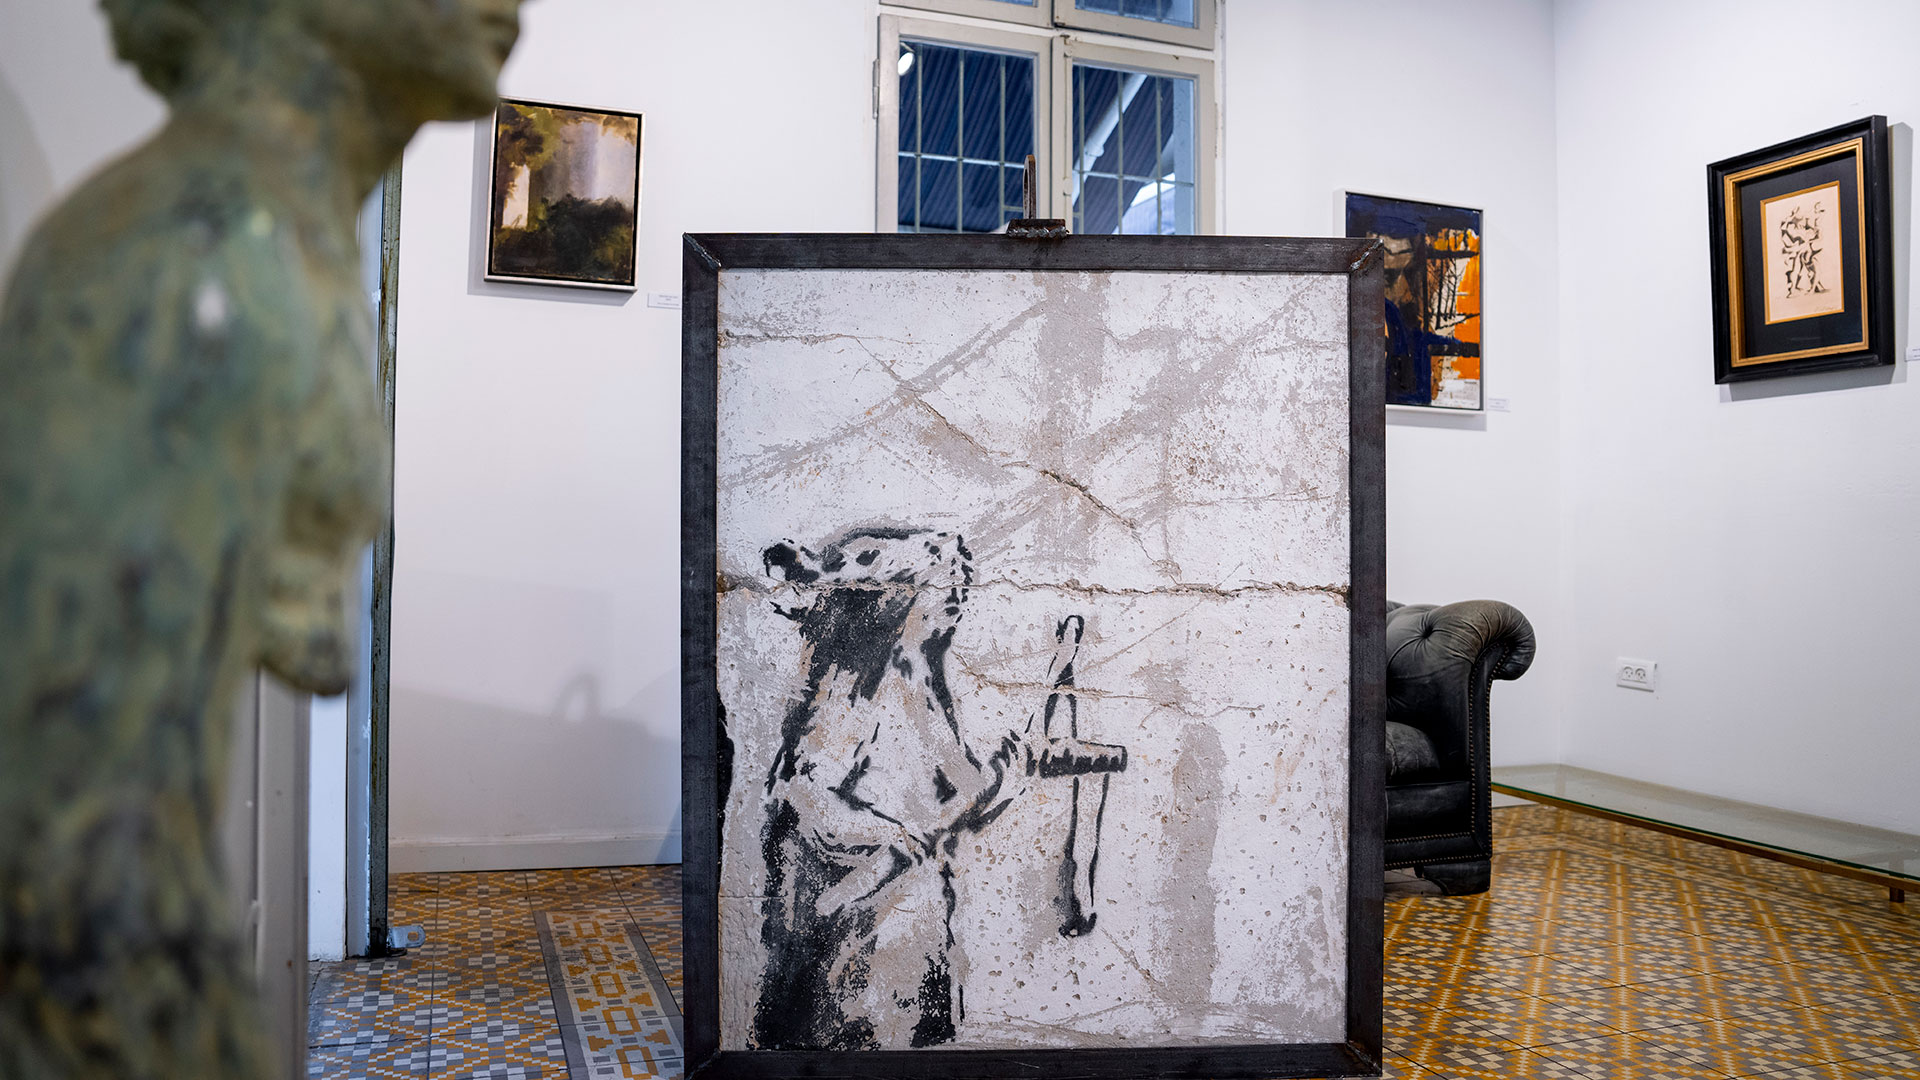 La obra de Banksy que se exhibe en Tel Aviv (AP/Oded Balilty)